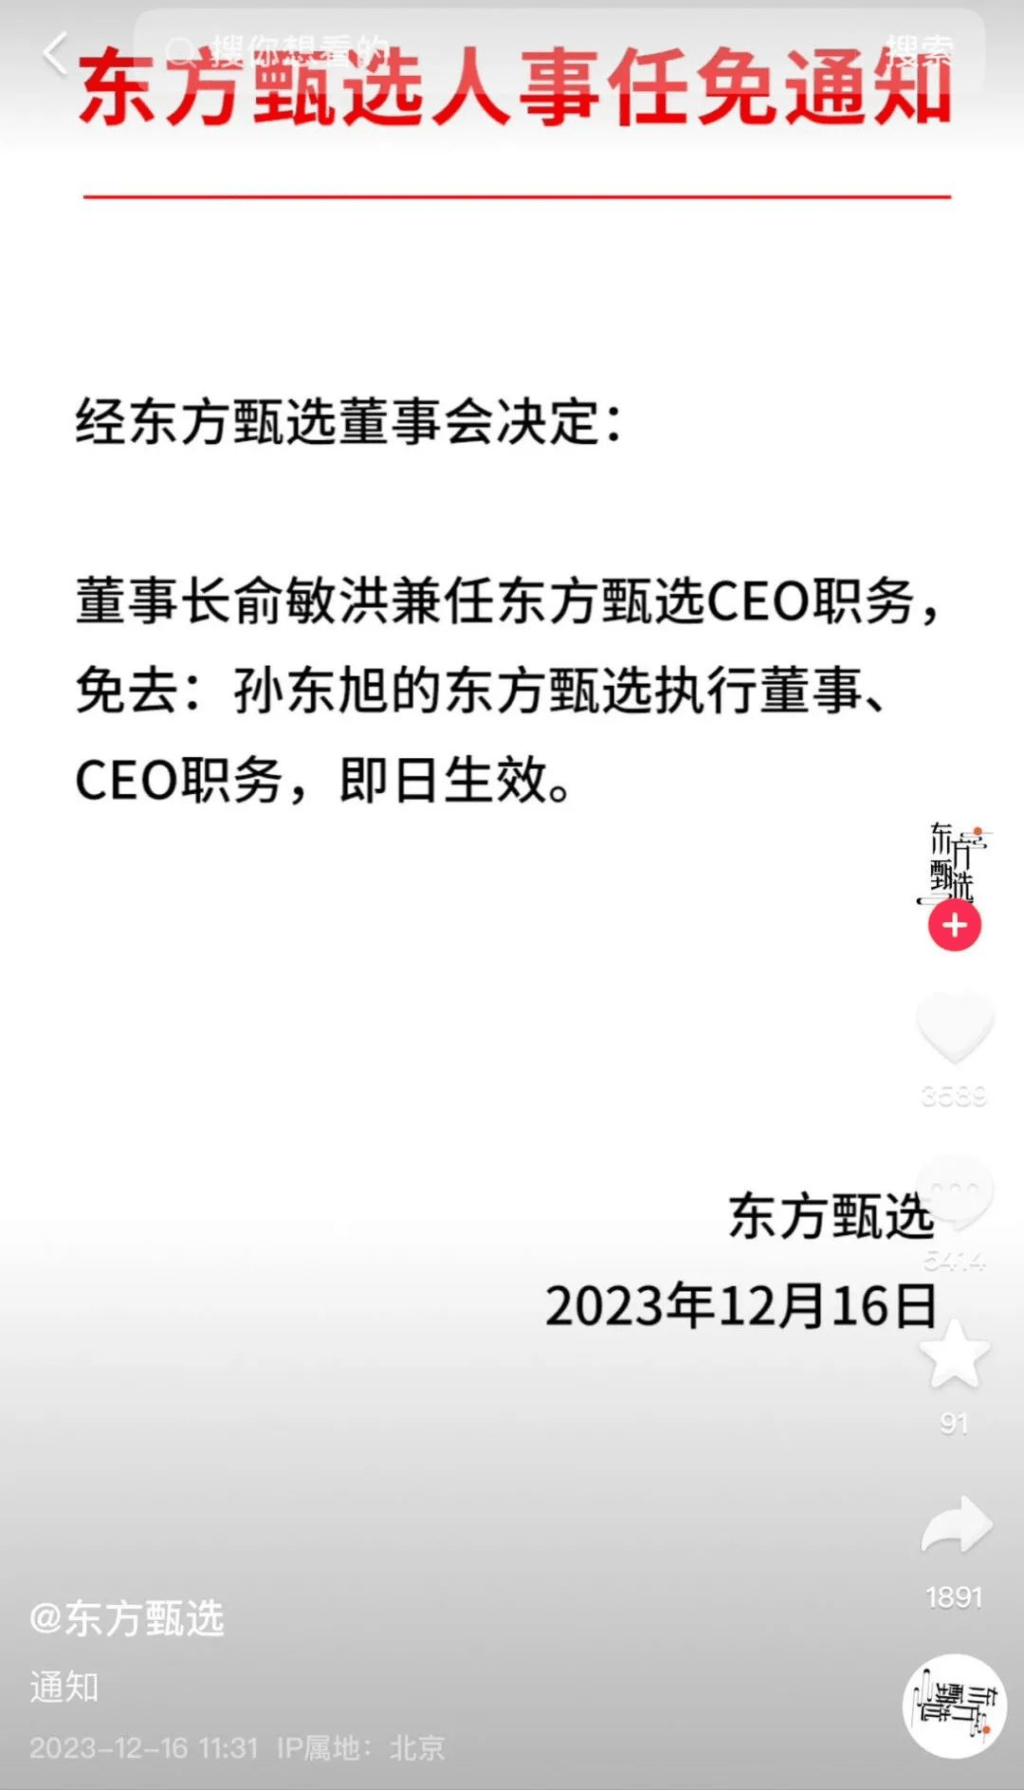 東方甄選CEO孫東旭被免職。即日生效。